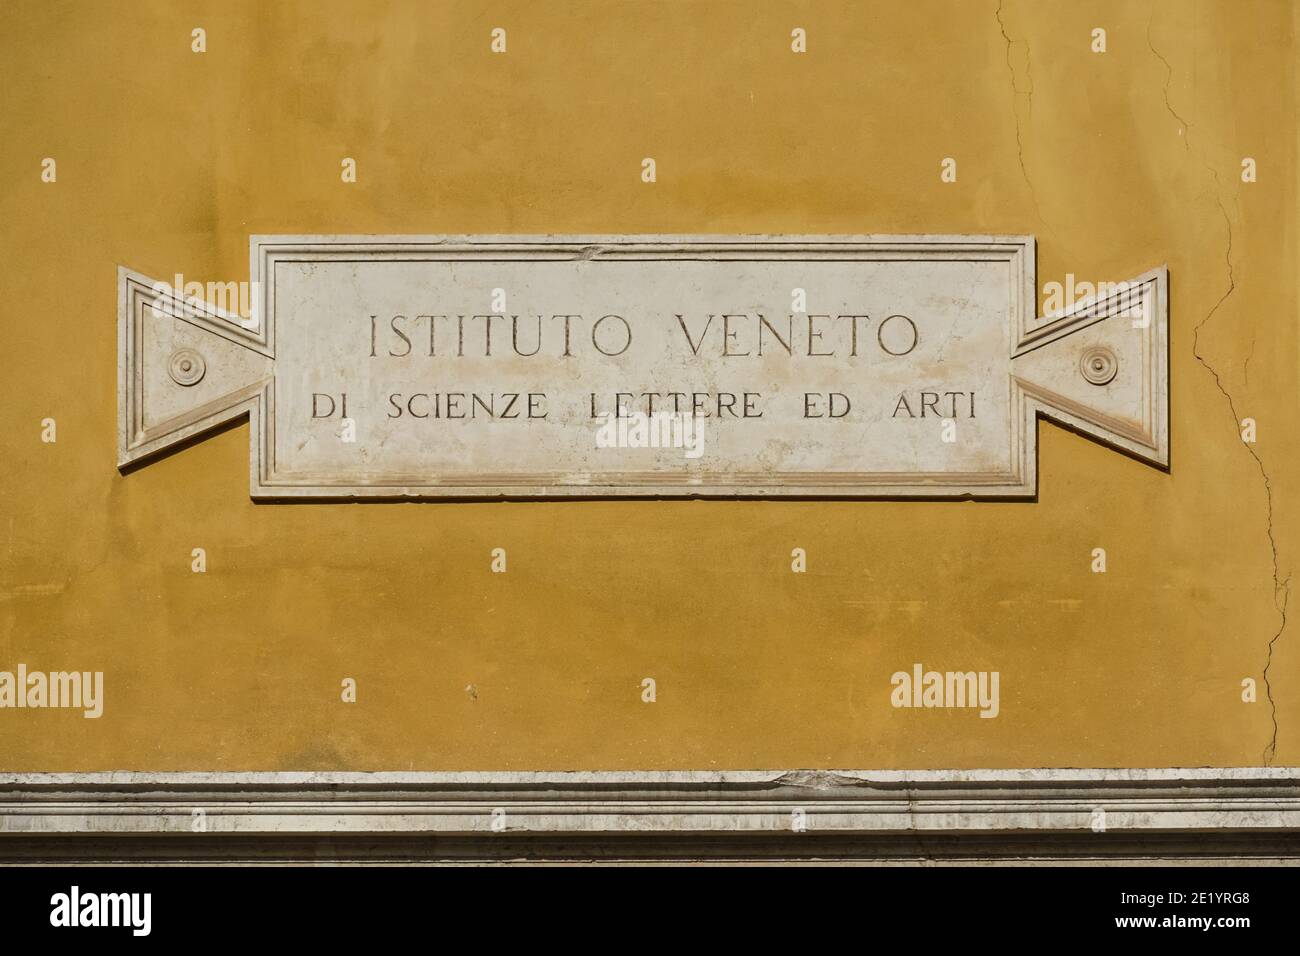 The Istituto Veneto di Scienze, Lettere ed Arti (IVSLA) in Palace Loredan, Venice, Italy Stock Photo